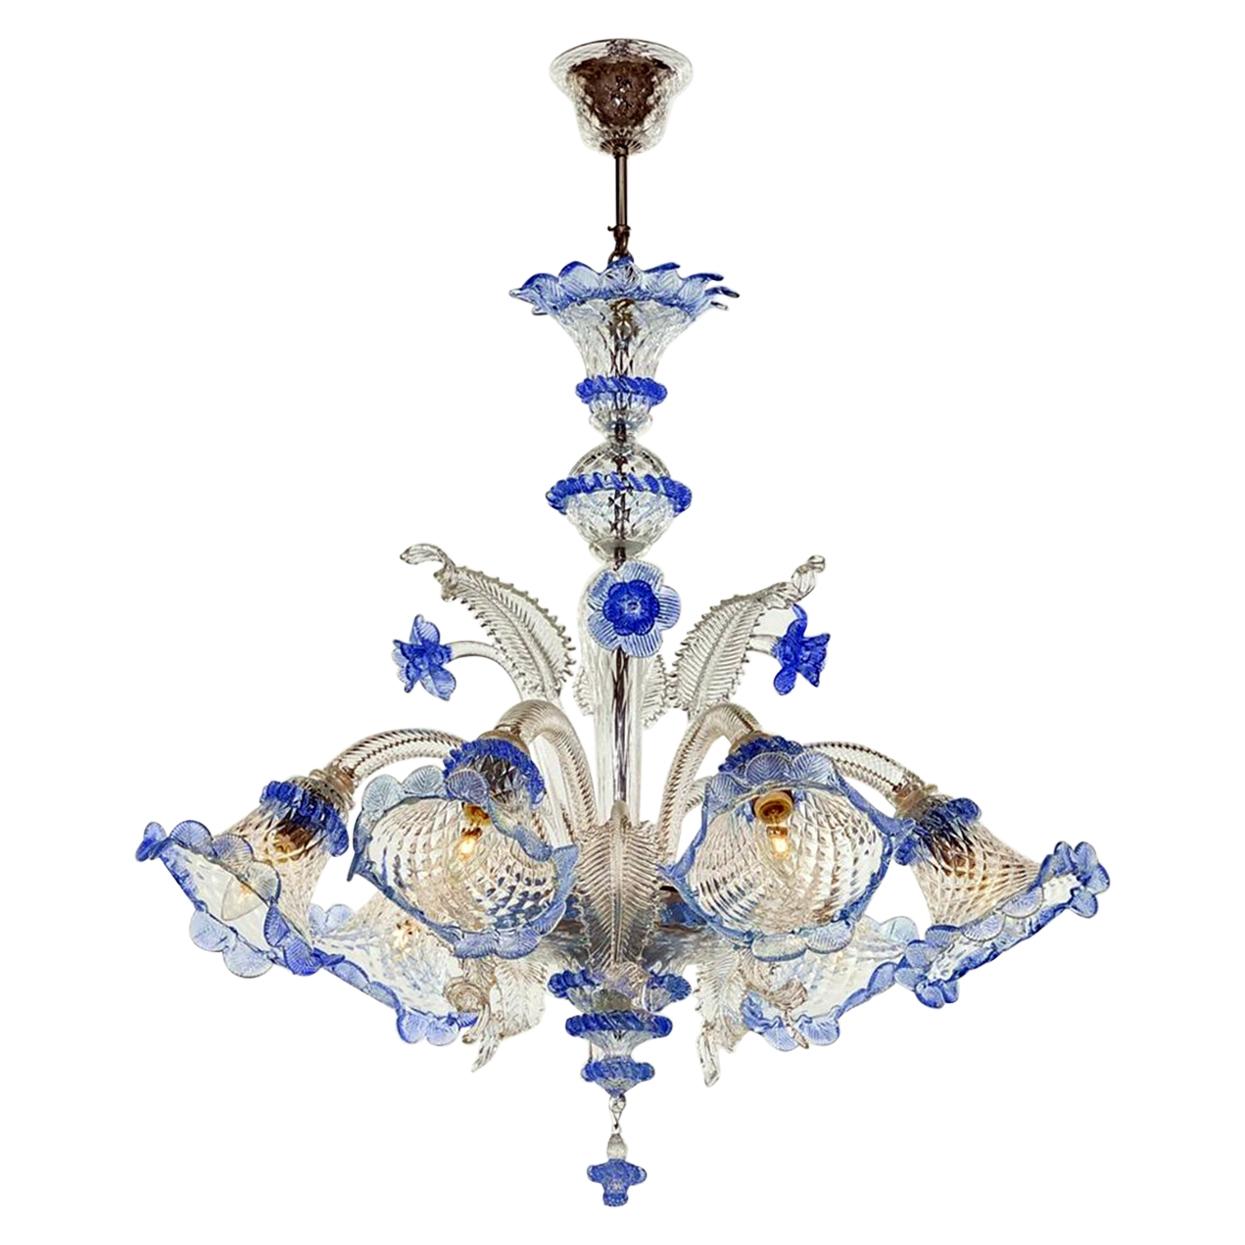 20th Century Modern Venetian Murano Glass Chandelier "Ca'rezzonico" Style